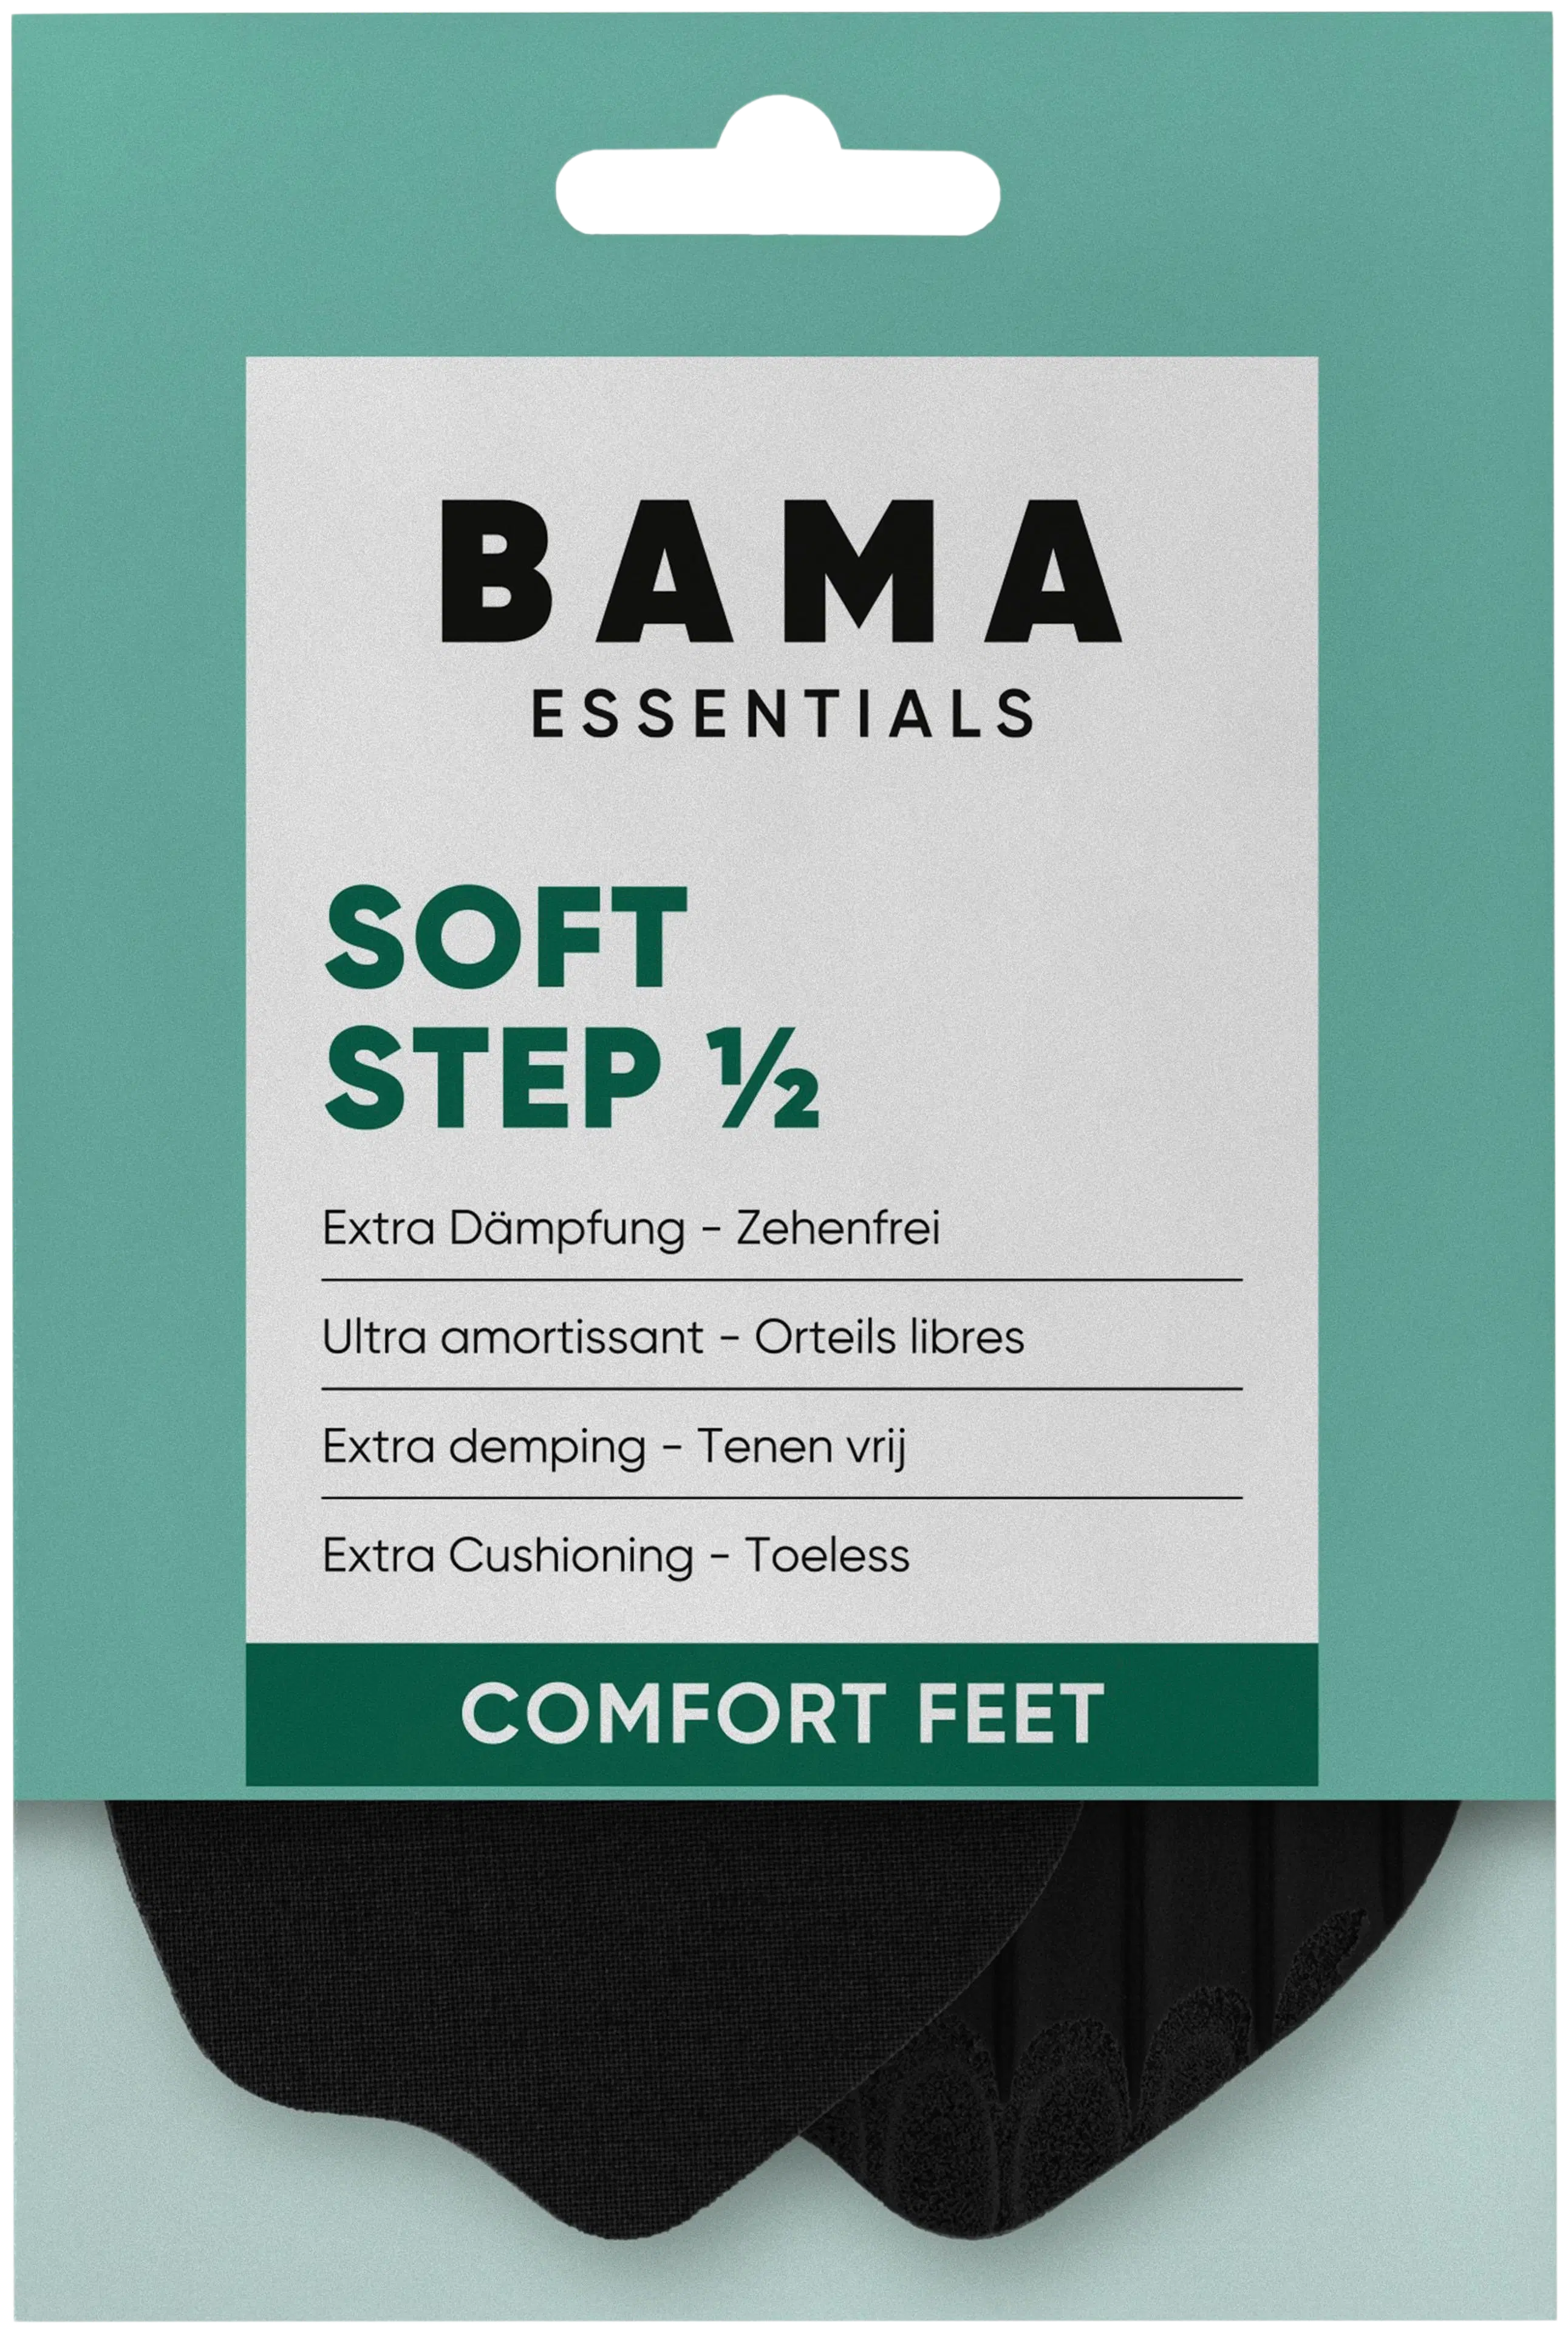 BAMA Soft Step Half 41/42